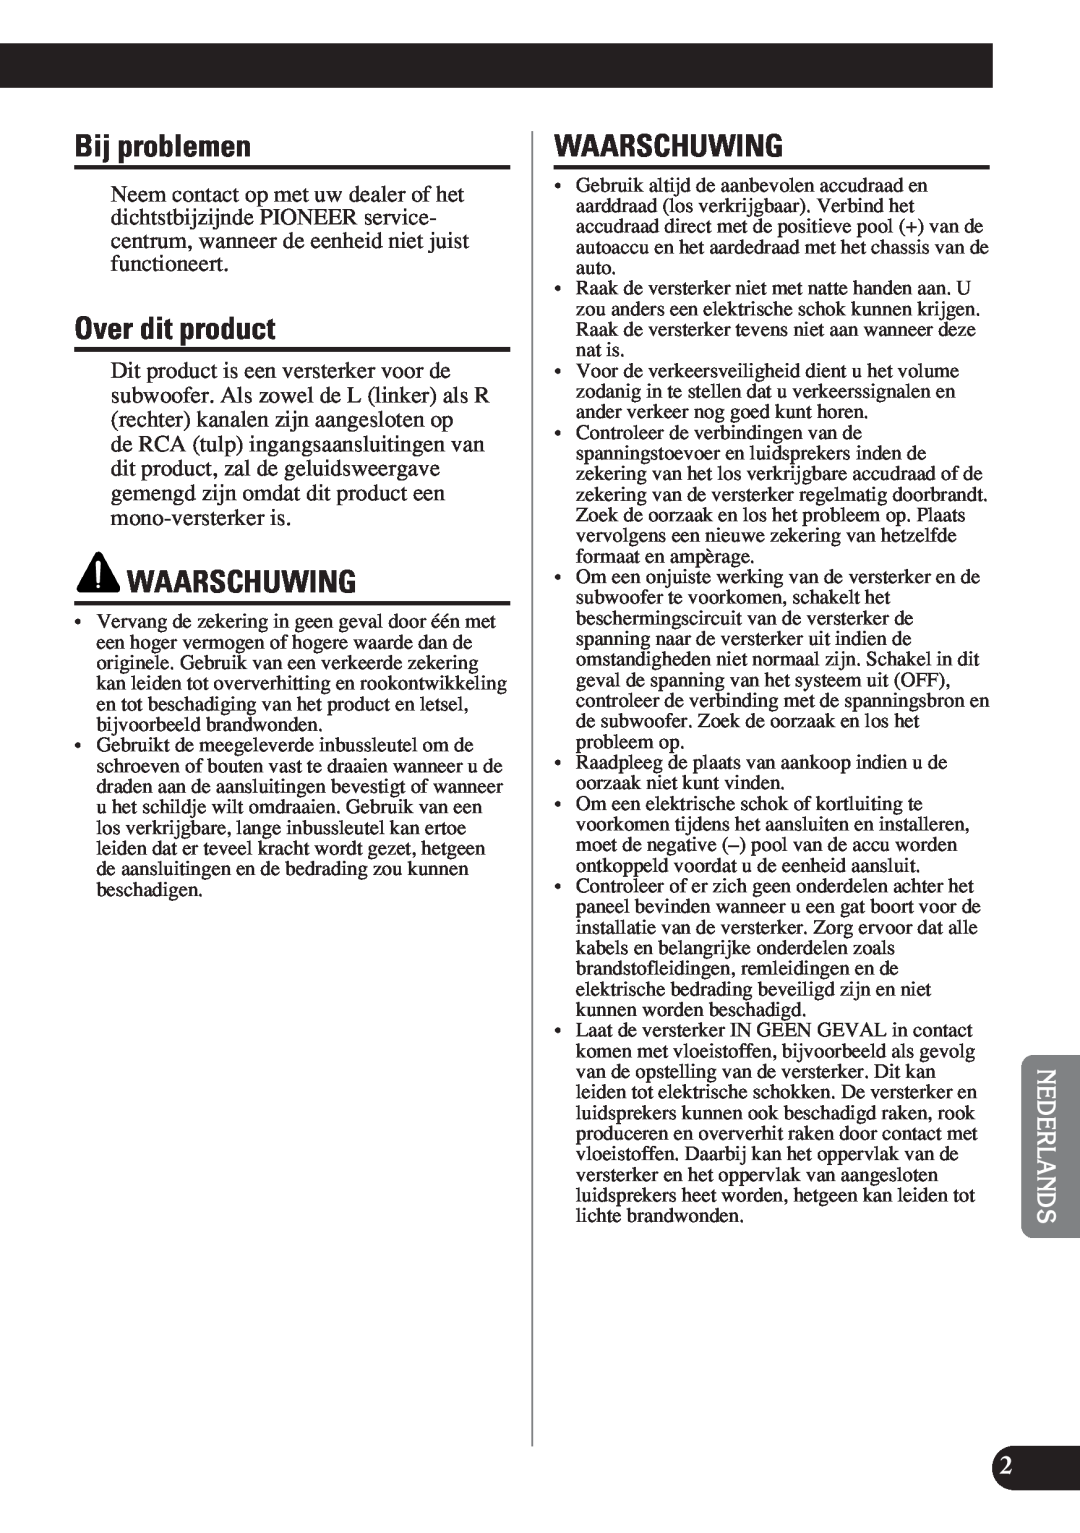 Pioneer D1200SPL owner manual Bij problemen, Over dit product, Waarschuwing 